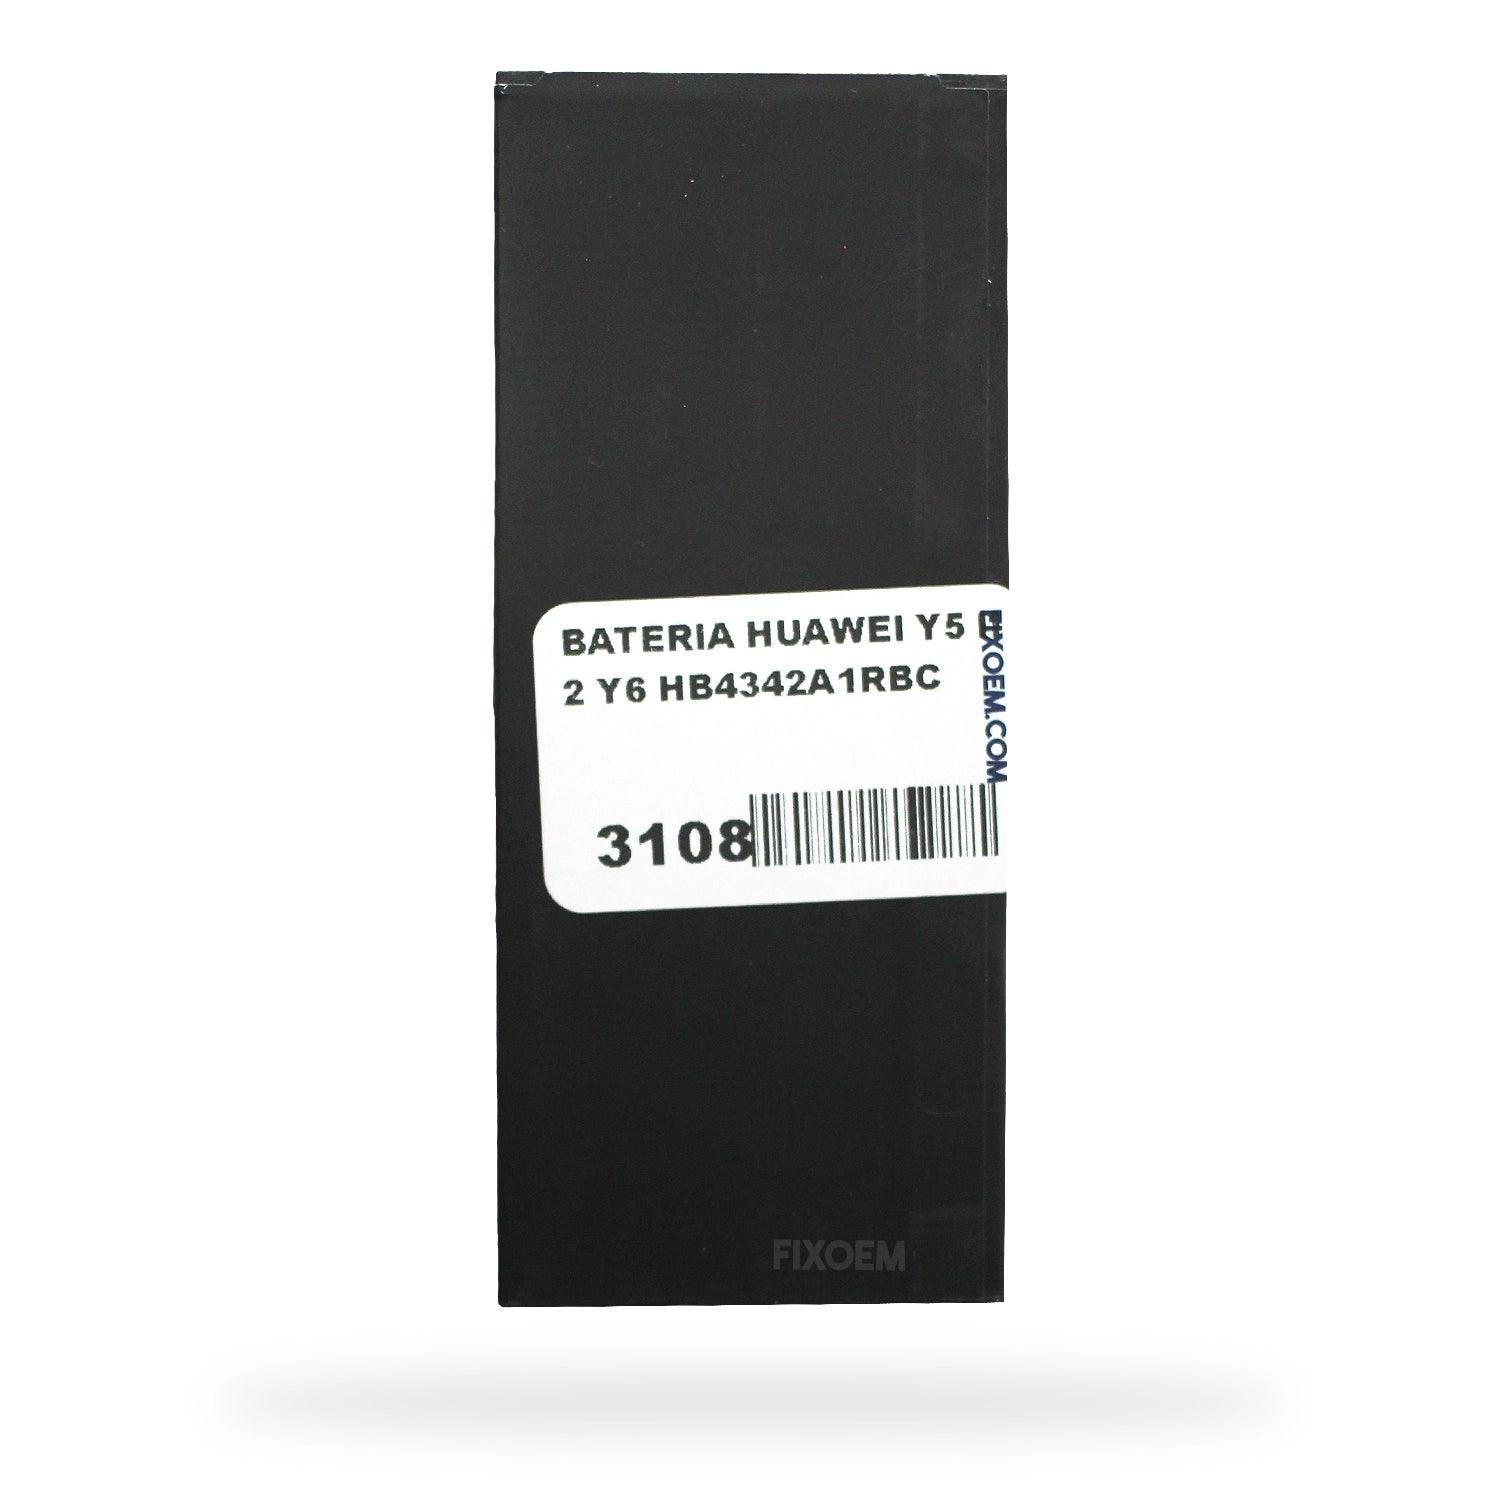 Bateria Huawei Y5Ii / Y6 Cun-L03 Mrd-LX3 Hb4342A1Rbc. a solo $ 100.00 Refaccion y puestos celulares, refurbish y microelectronica.- FixOEM